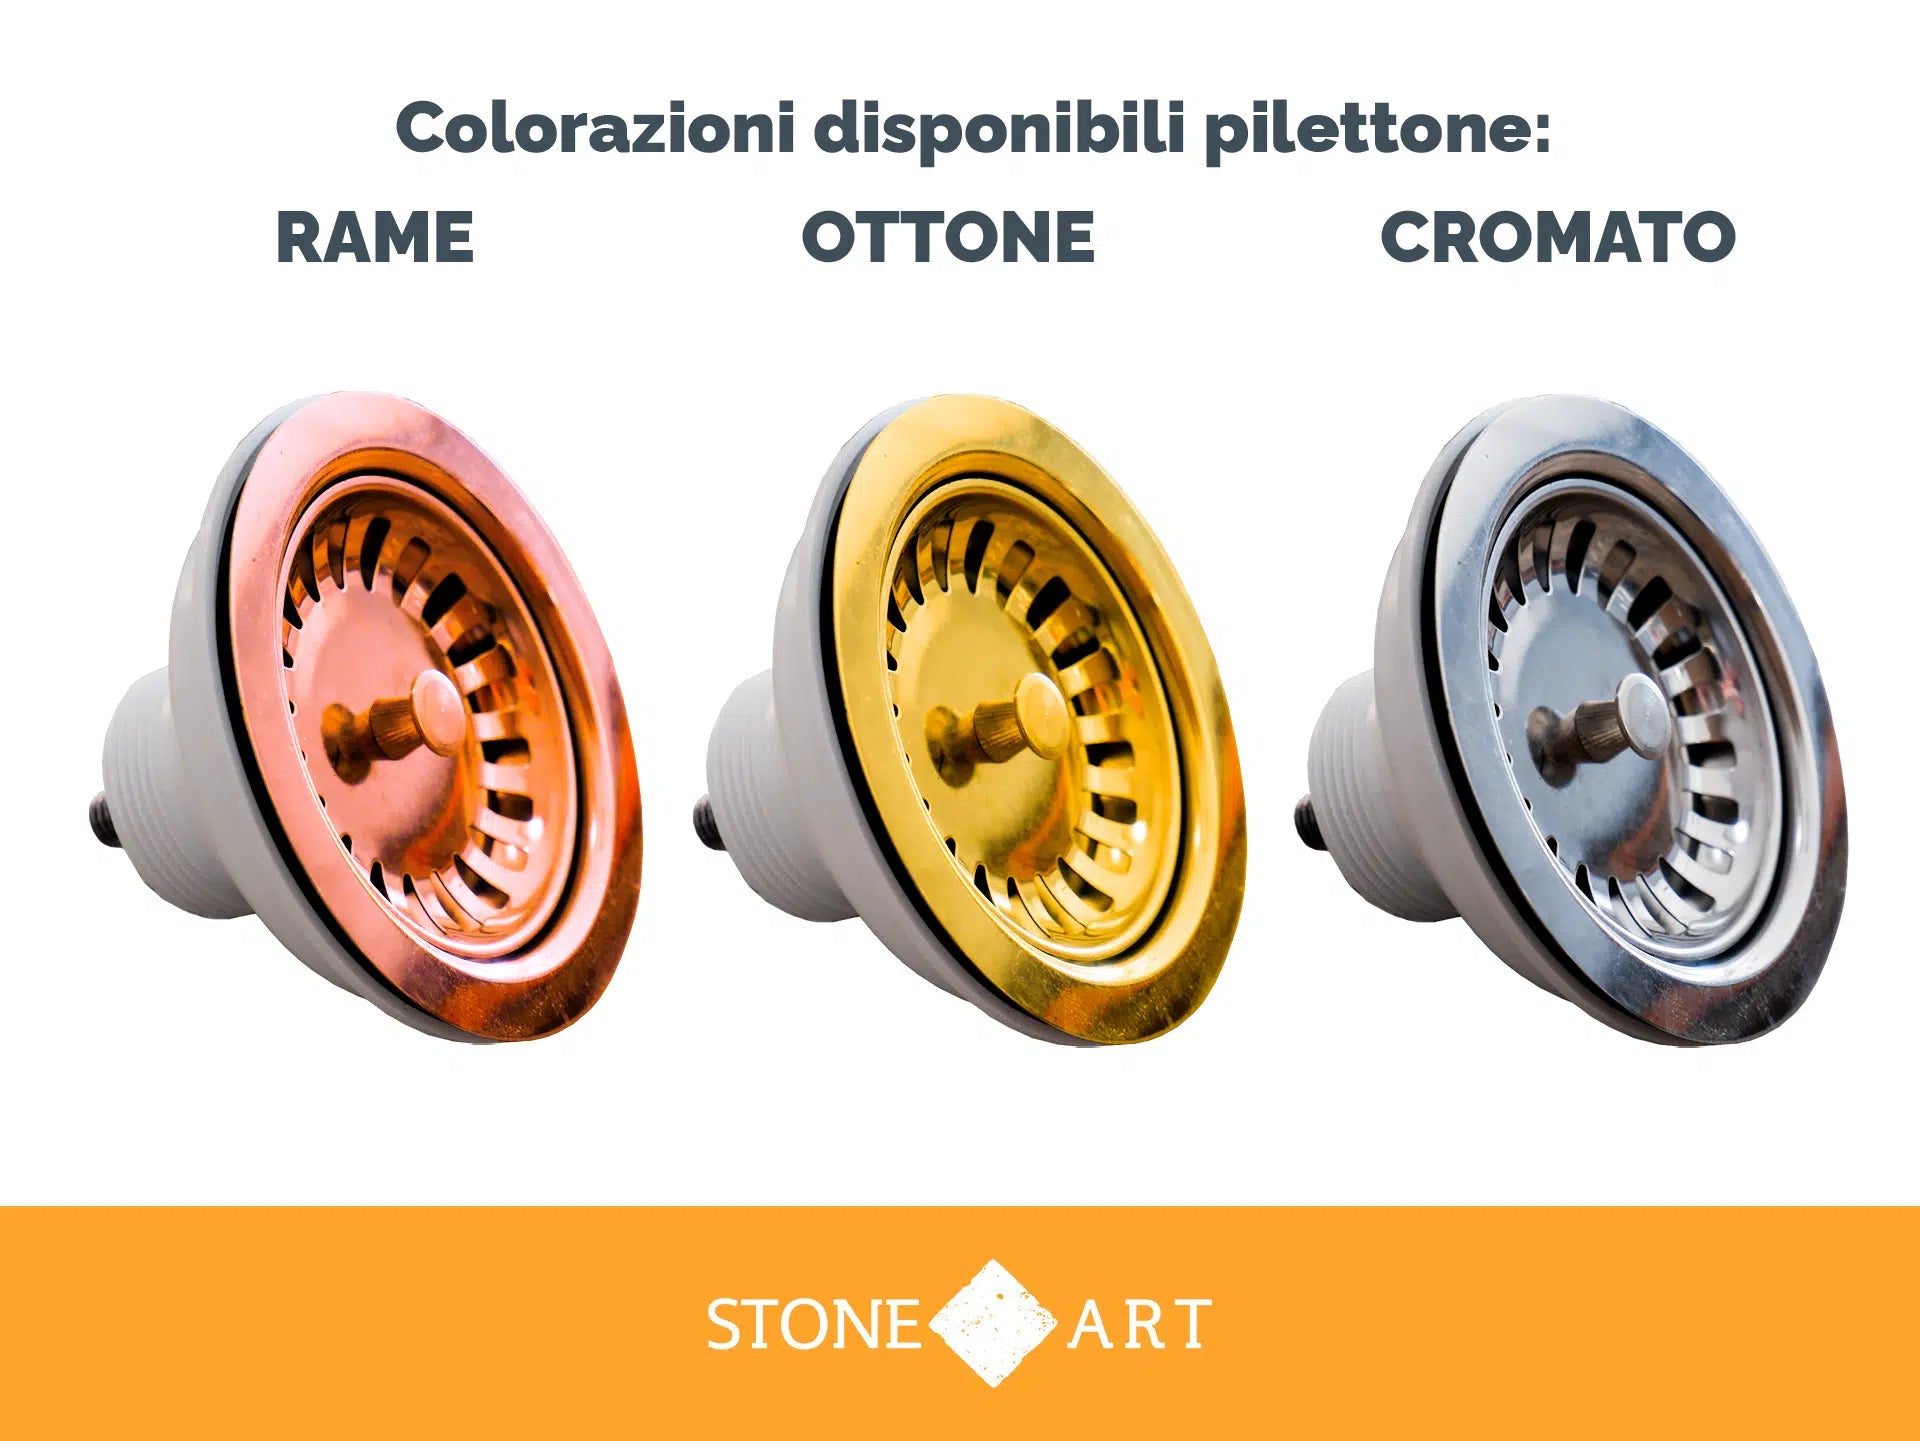 Colorazioni disponibili del pilettone in dotazione con il lavello in pietra naturale stone art